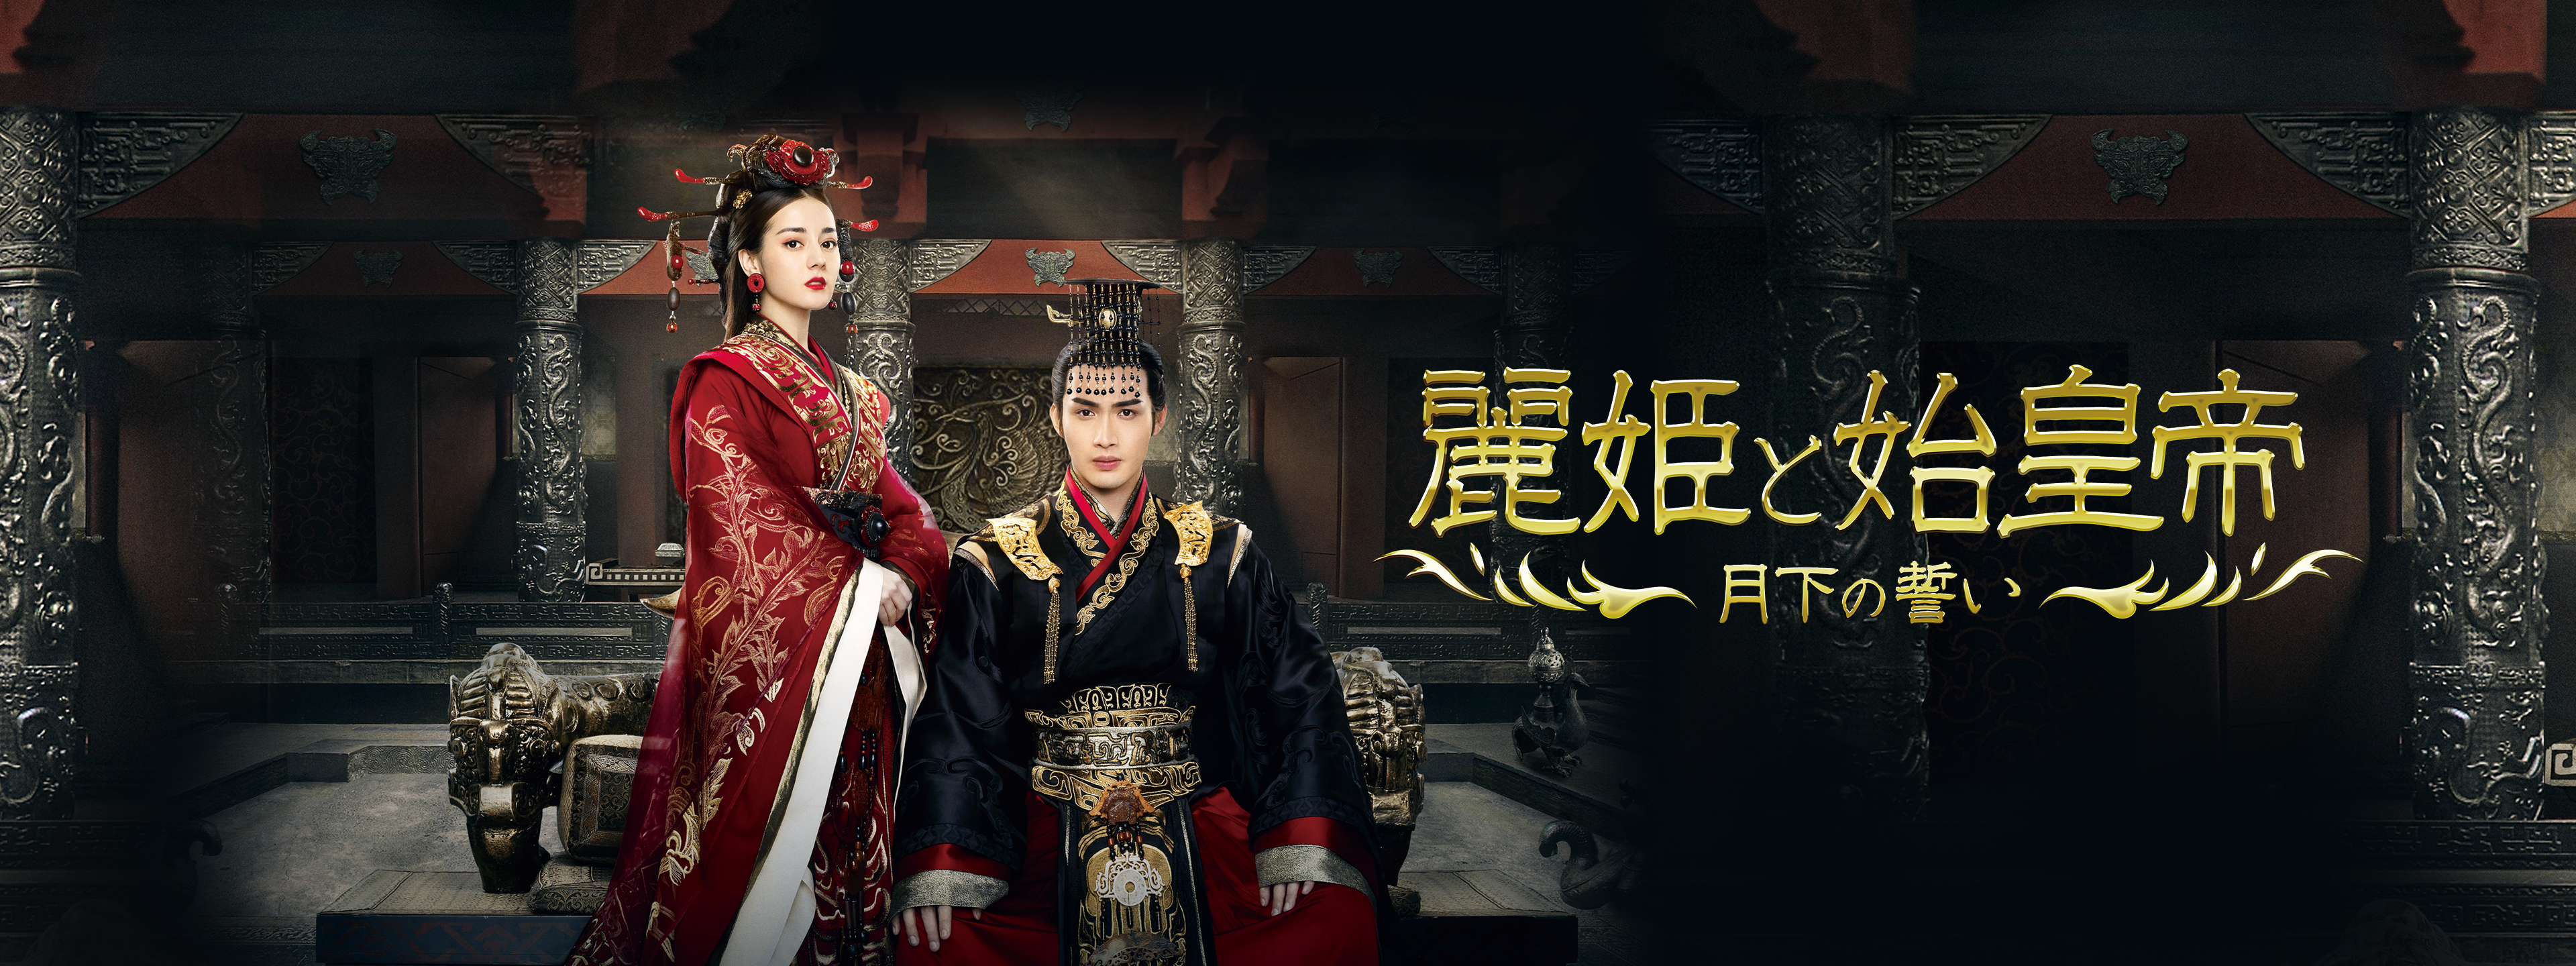 麗姫と始皇帝 月下の誓い BOX 2 麗姫(れいき)と始皇帝 オンラインショッピング - TVドラマ